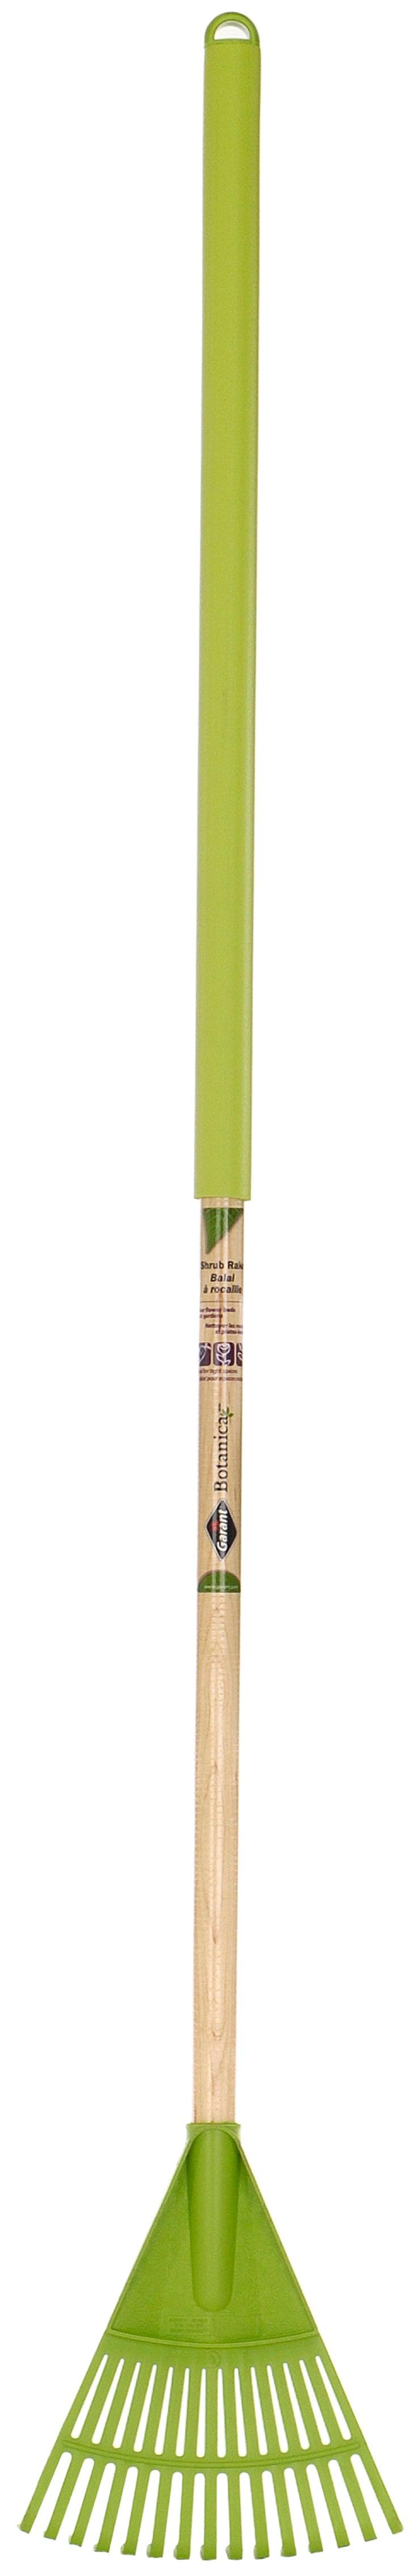 Garant® Botanica Shrub Rake 15-Tine Poly Long Handle